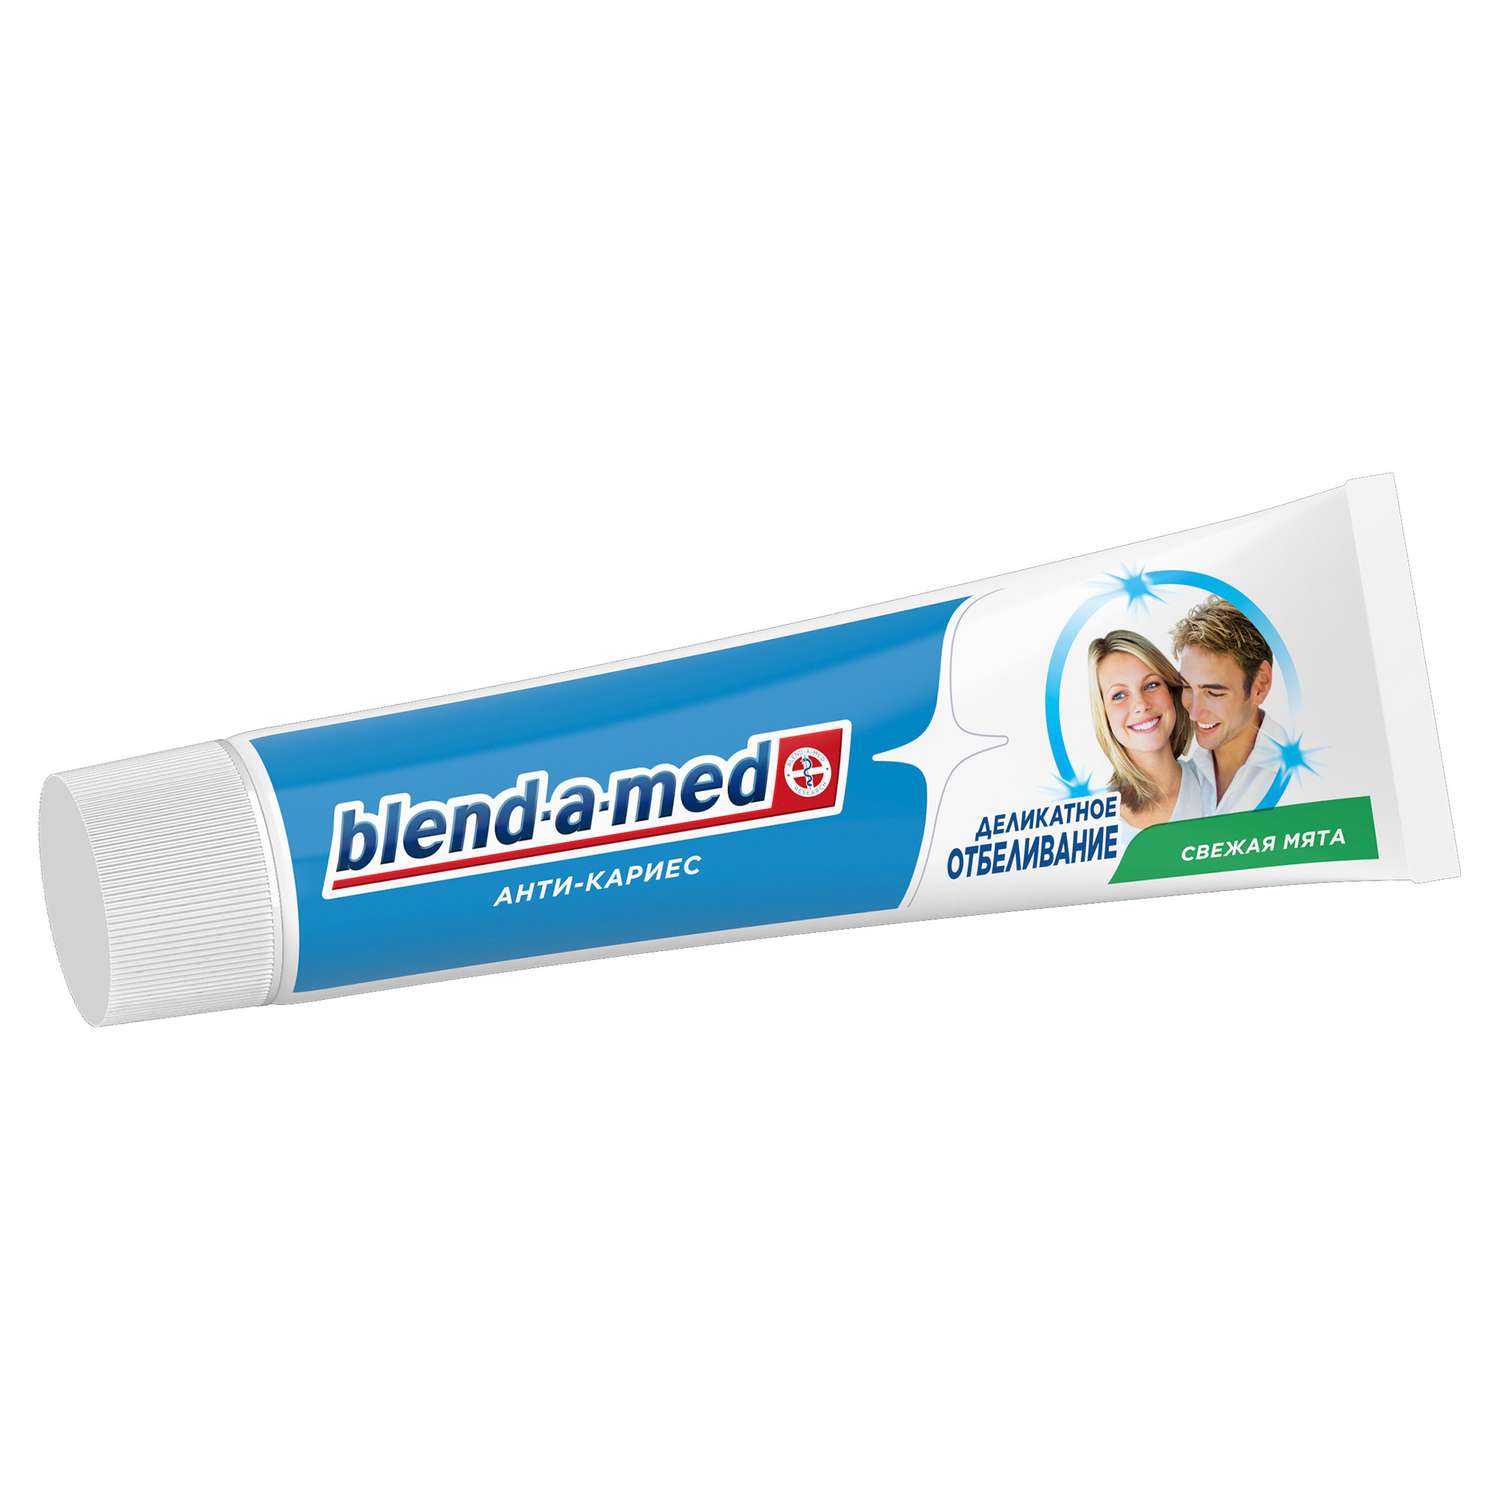 Зубная паста Blend-a-med Анти-кариес Деликатное отбеливание Свежая мята 100мл - фото 2